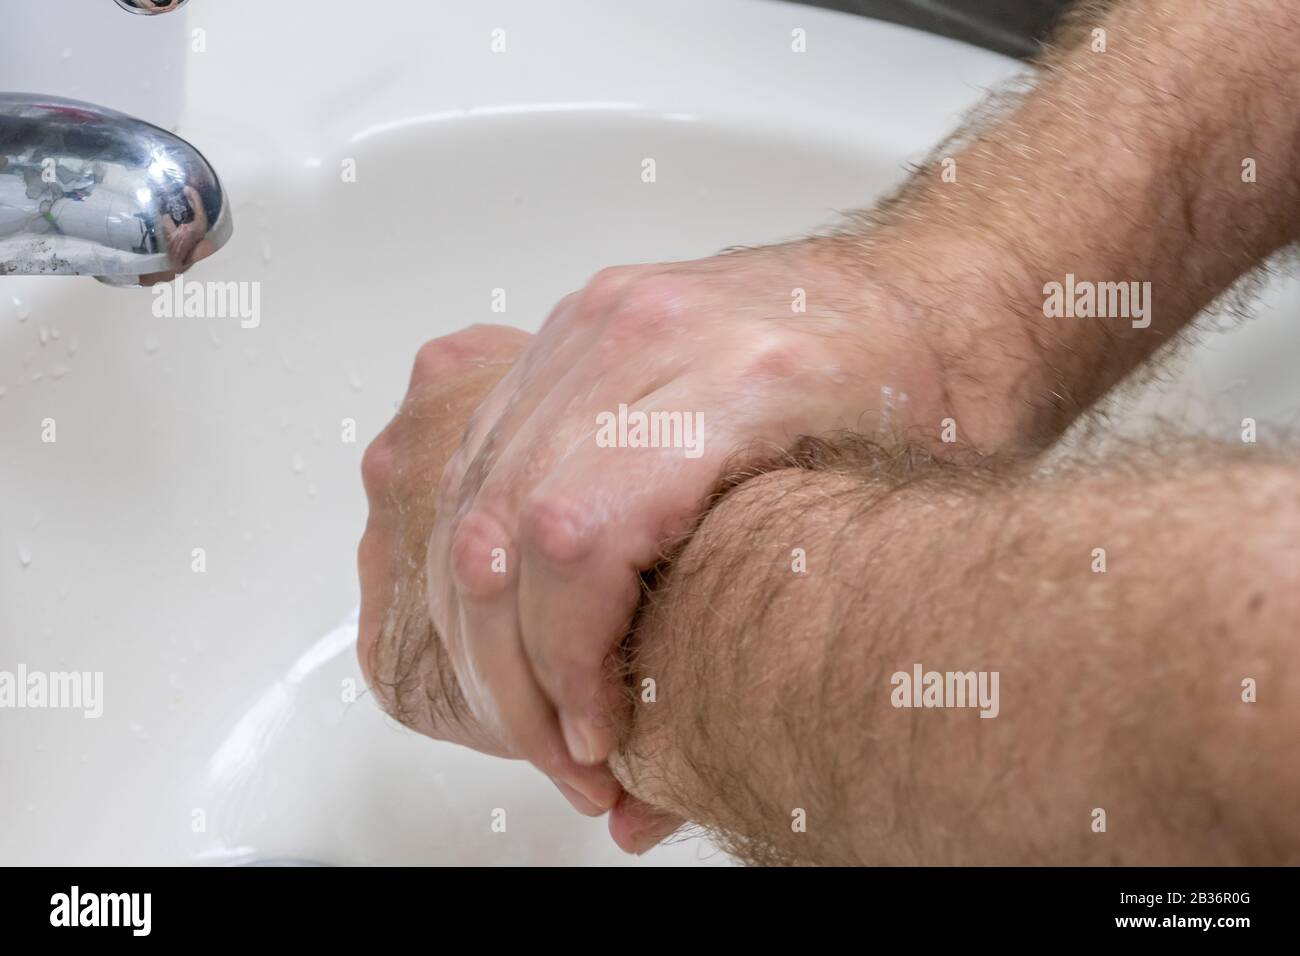 Uomo lavando le mani in primo piano lavabo, uno di diversi in serie handwashing steps Foto Stock